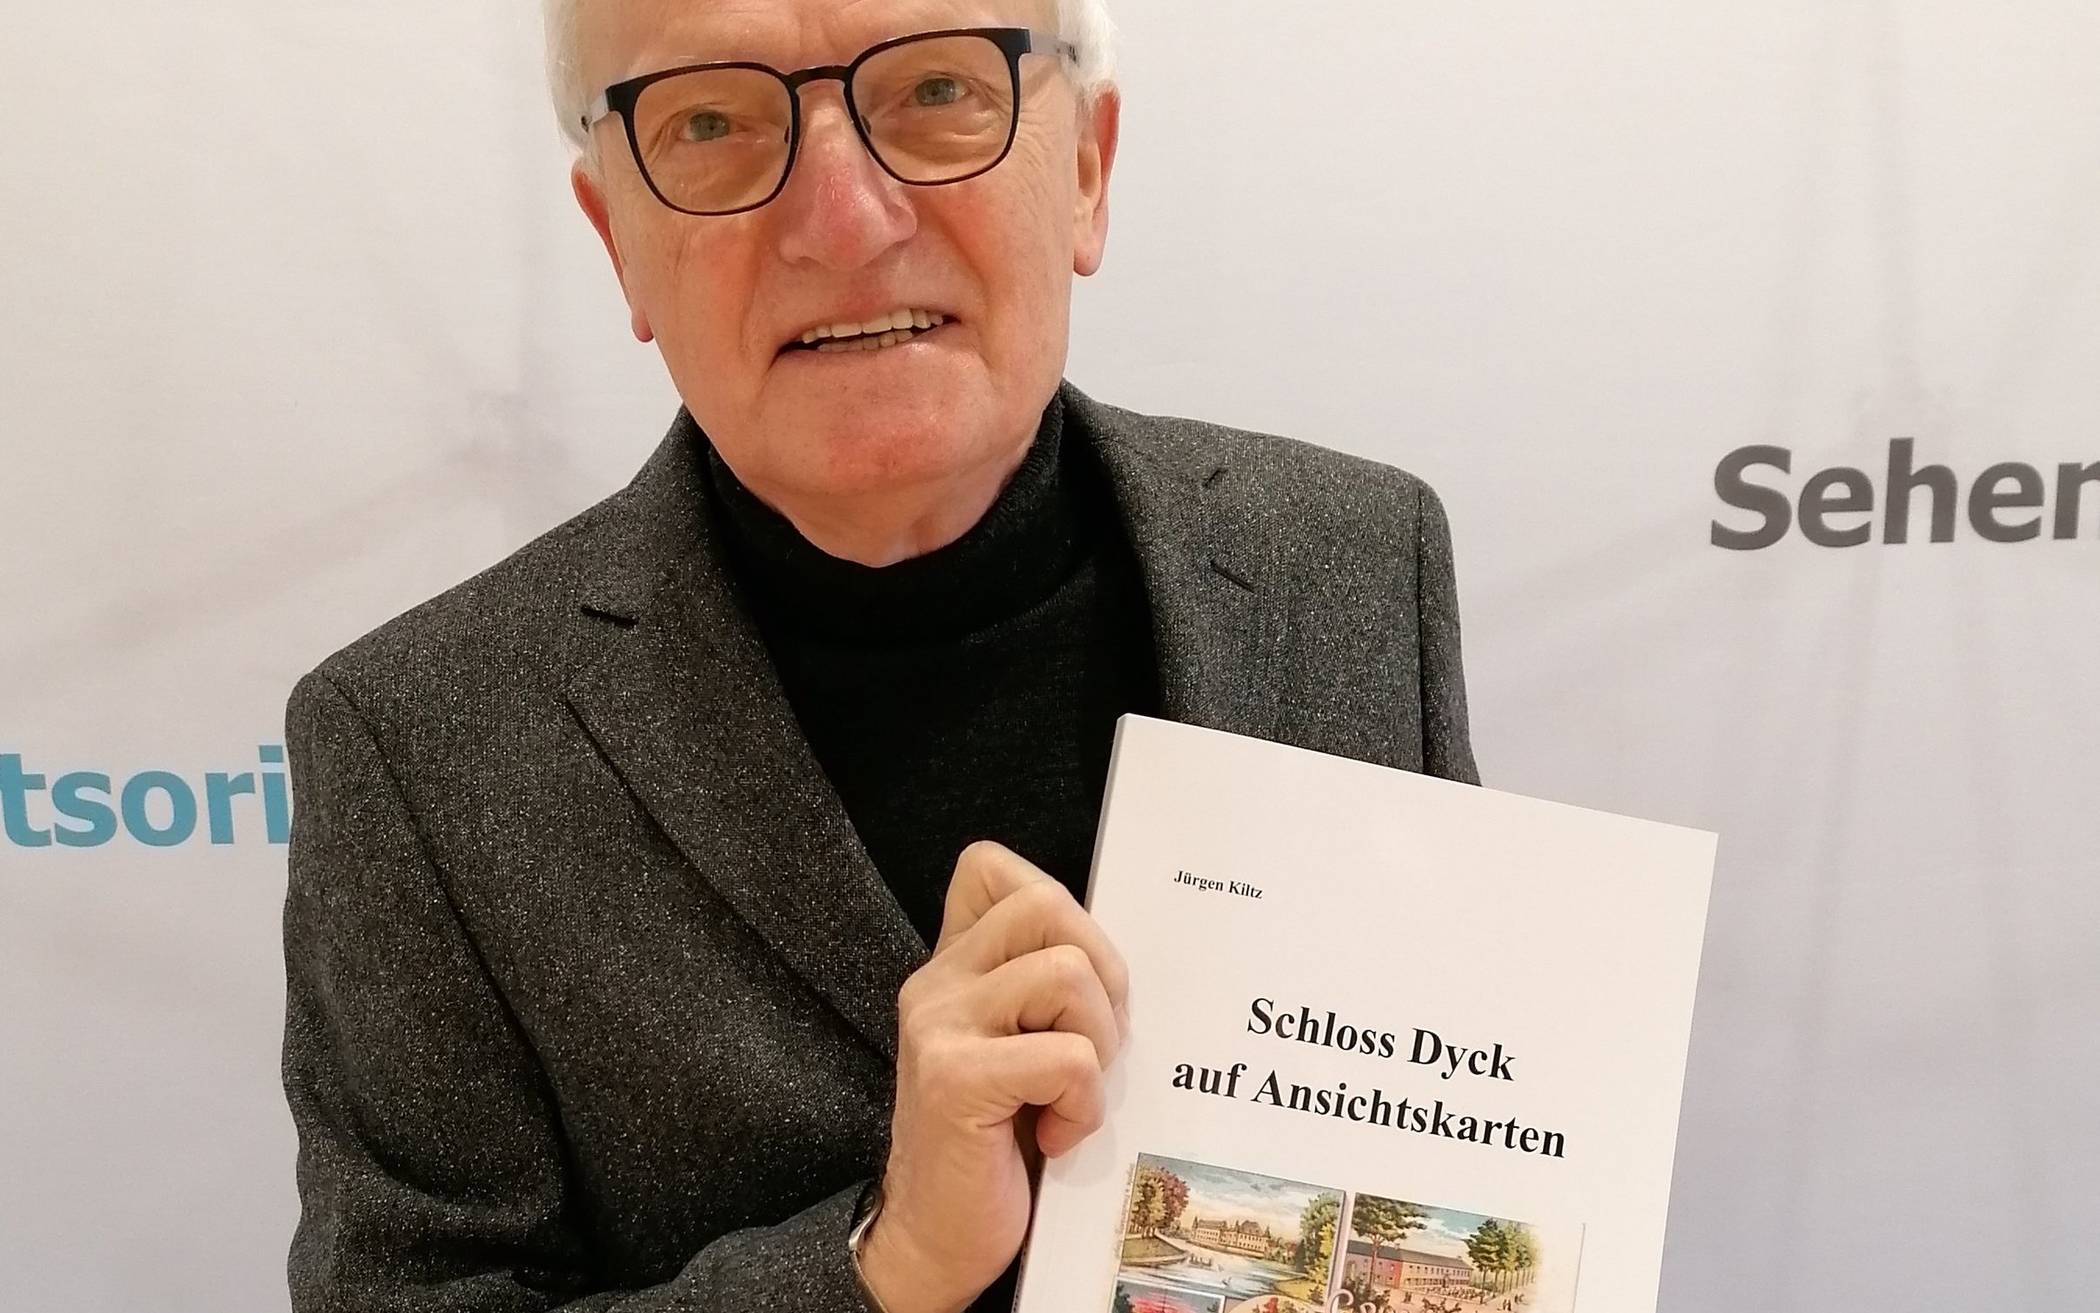  Jürgen Kiltz veröffentlichte jetzt ein Buch mit alten Postkarten rund um Schloss Dyck. Dabei zeigt der Heimatforscher bauliche Veränderungen und gewährt spannende Einblicke. 